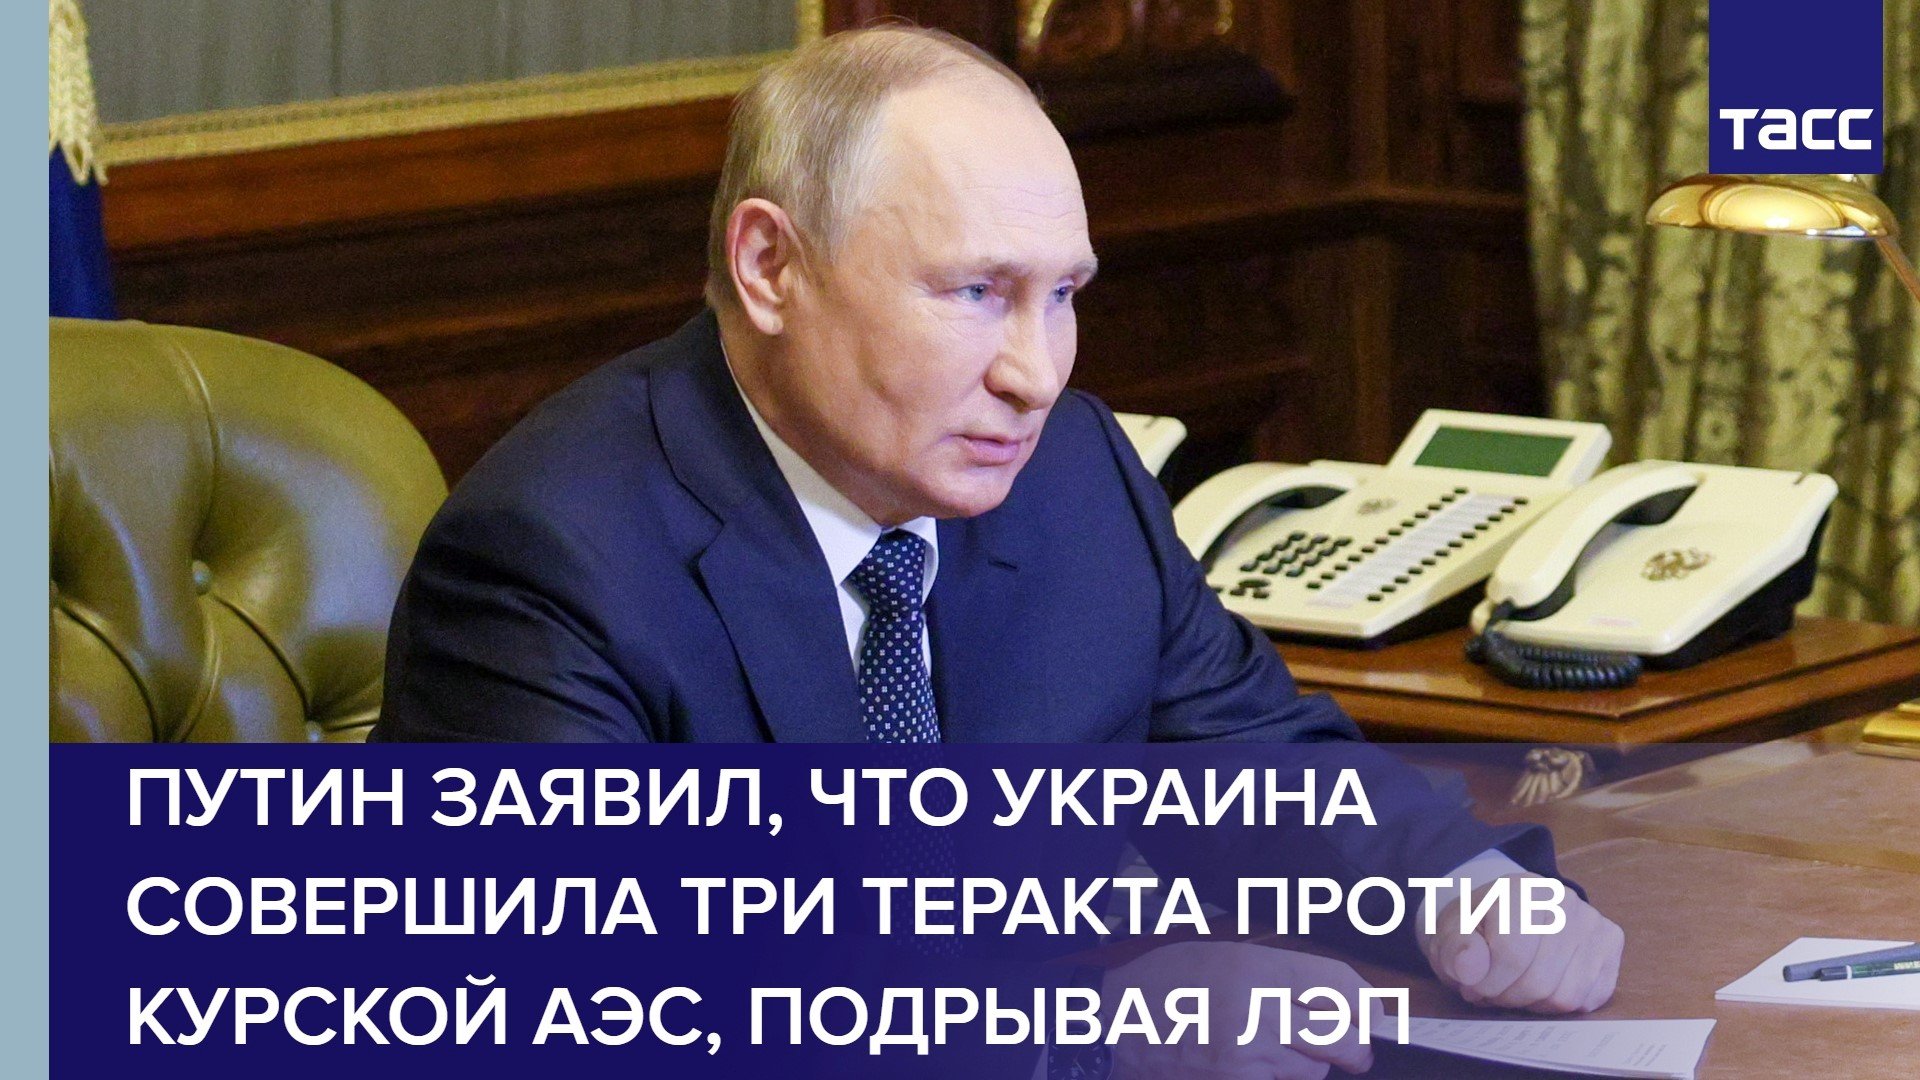 Путин заявил, что Украина совершила три теракта против Курской АЭС, подрывая ЛЭП